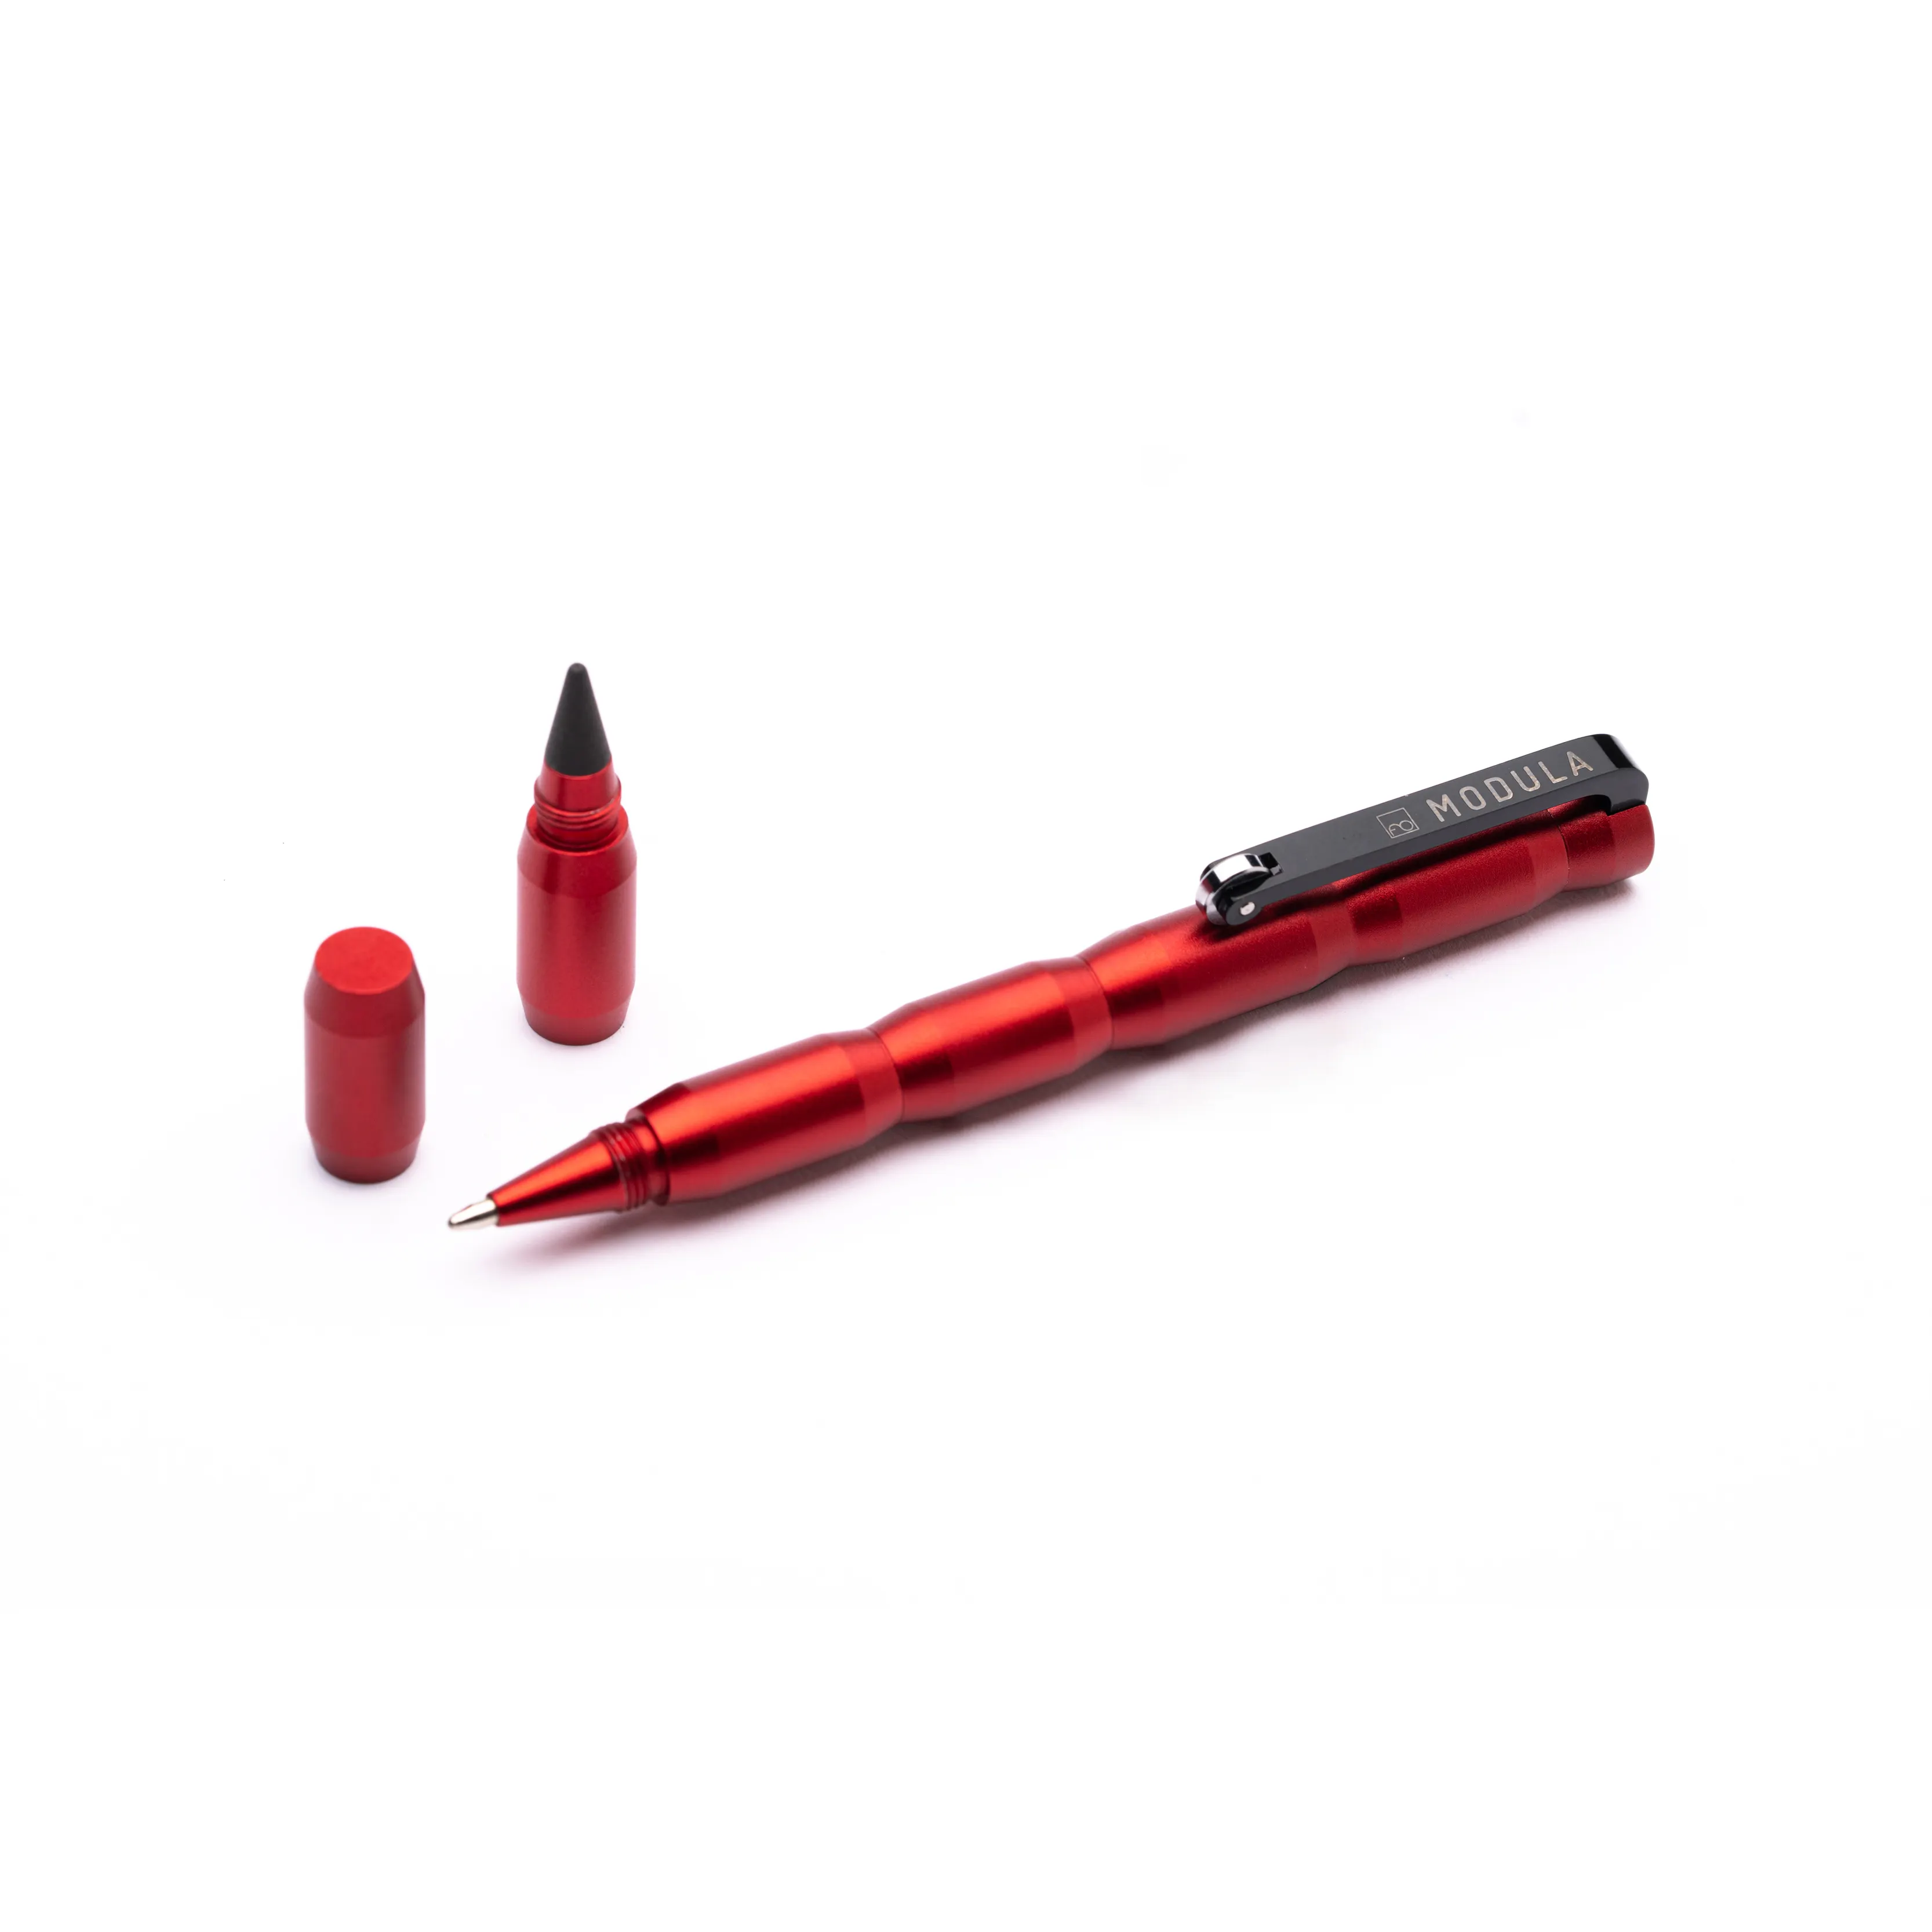 Nuova innovativa penna modulare con ricarica a sfera e Design sostituibile con punta In grafite In italia per modulo regalo aziendale rosso